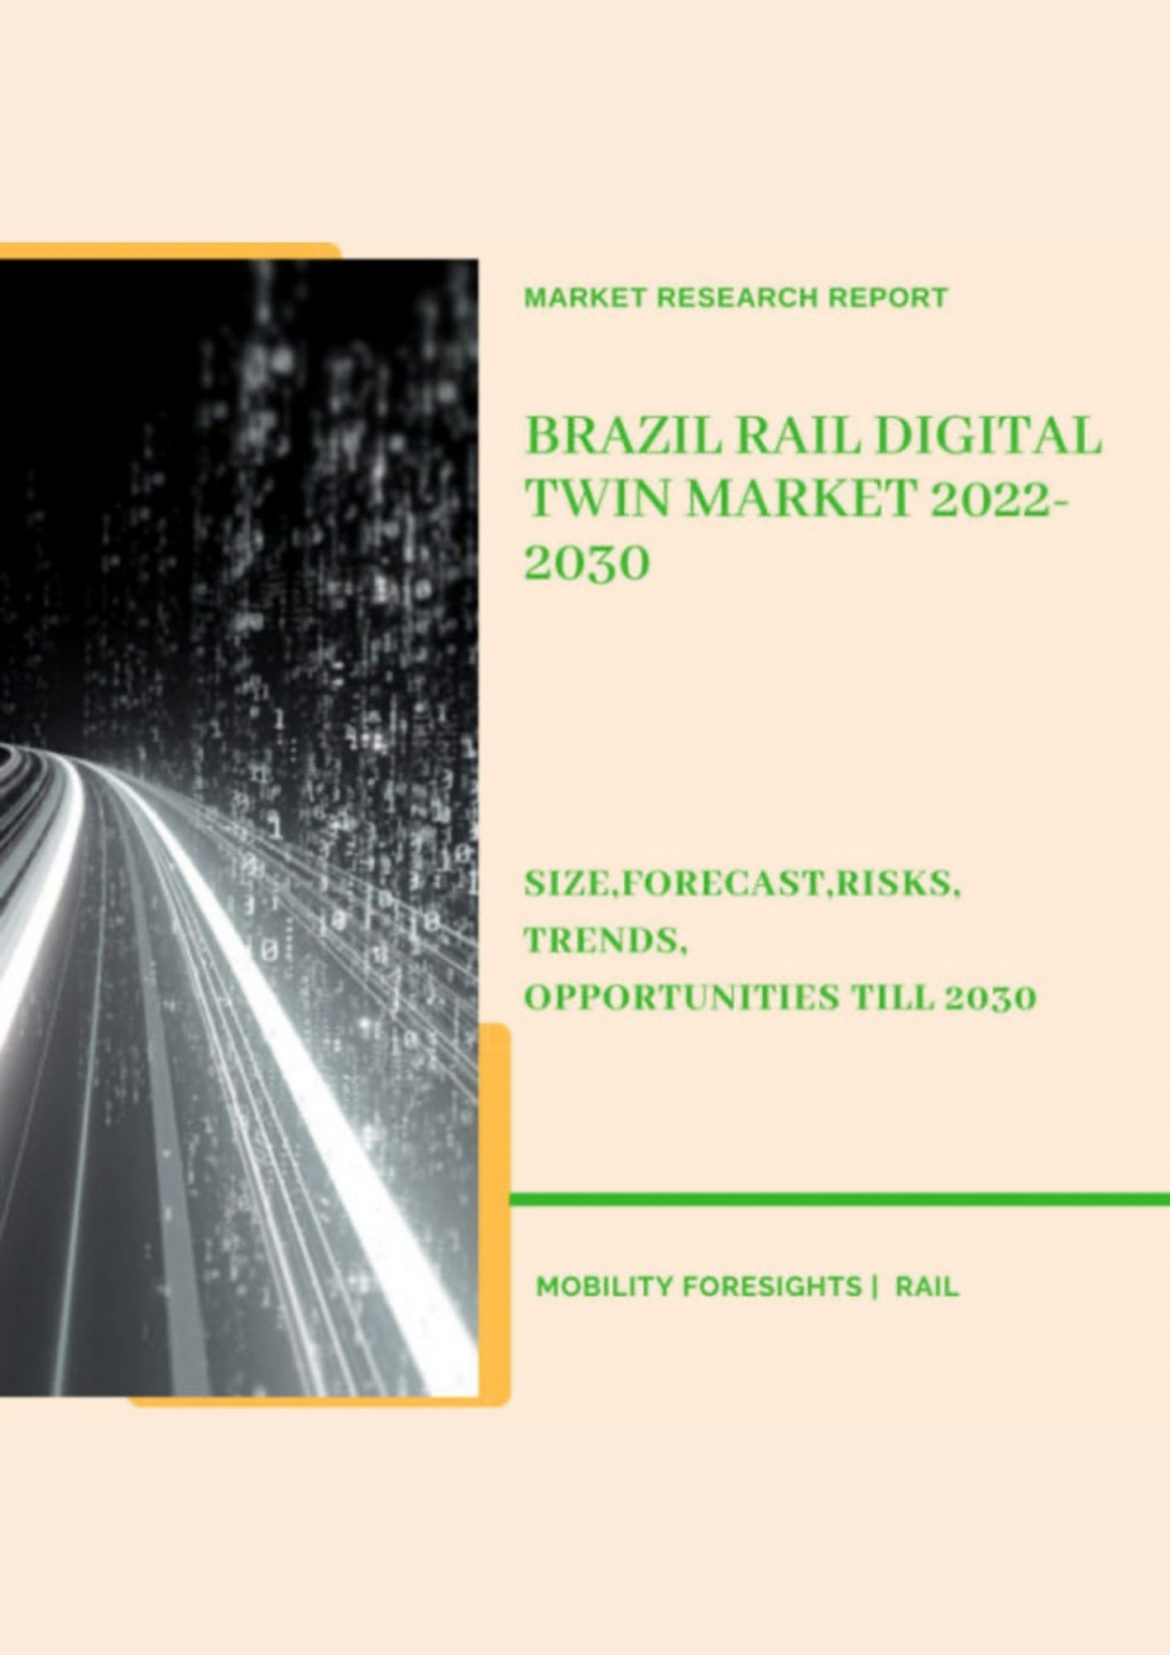 Brazil Rail Digital Twin Market 2022-2030